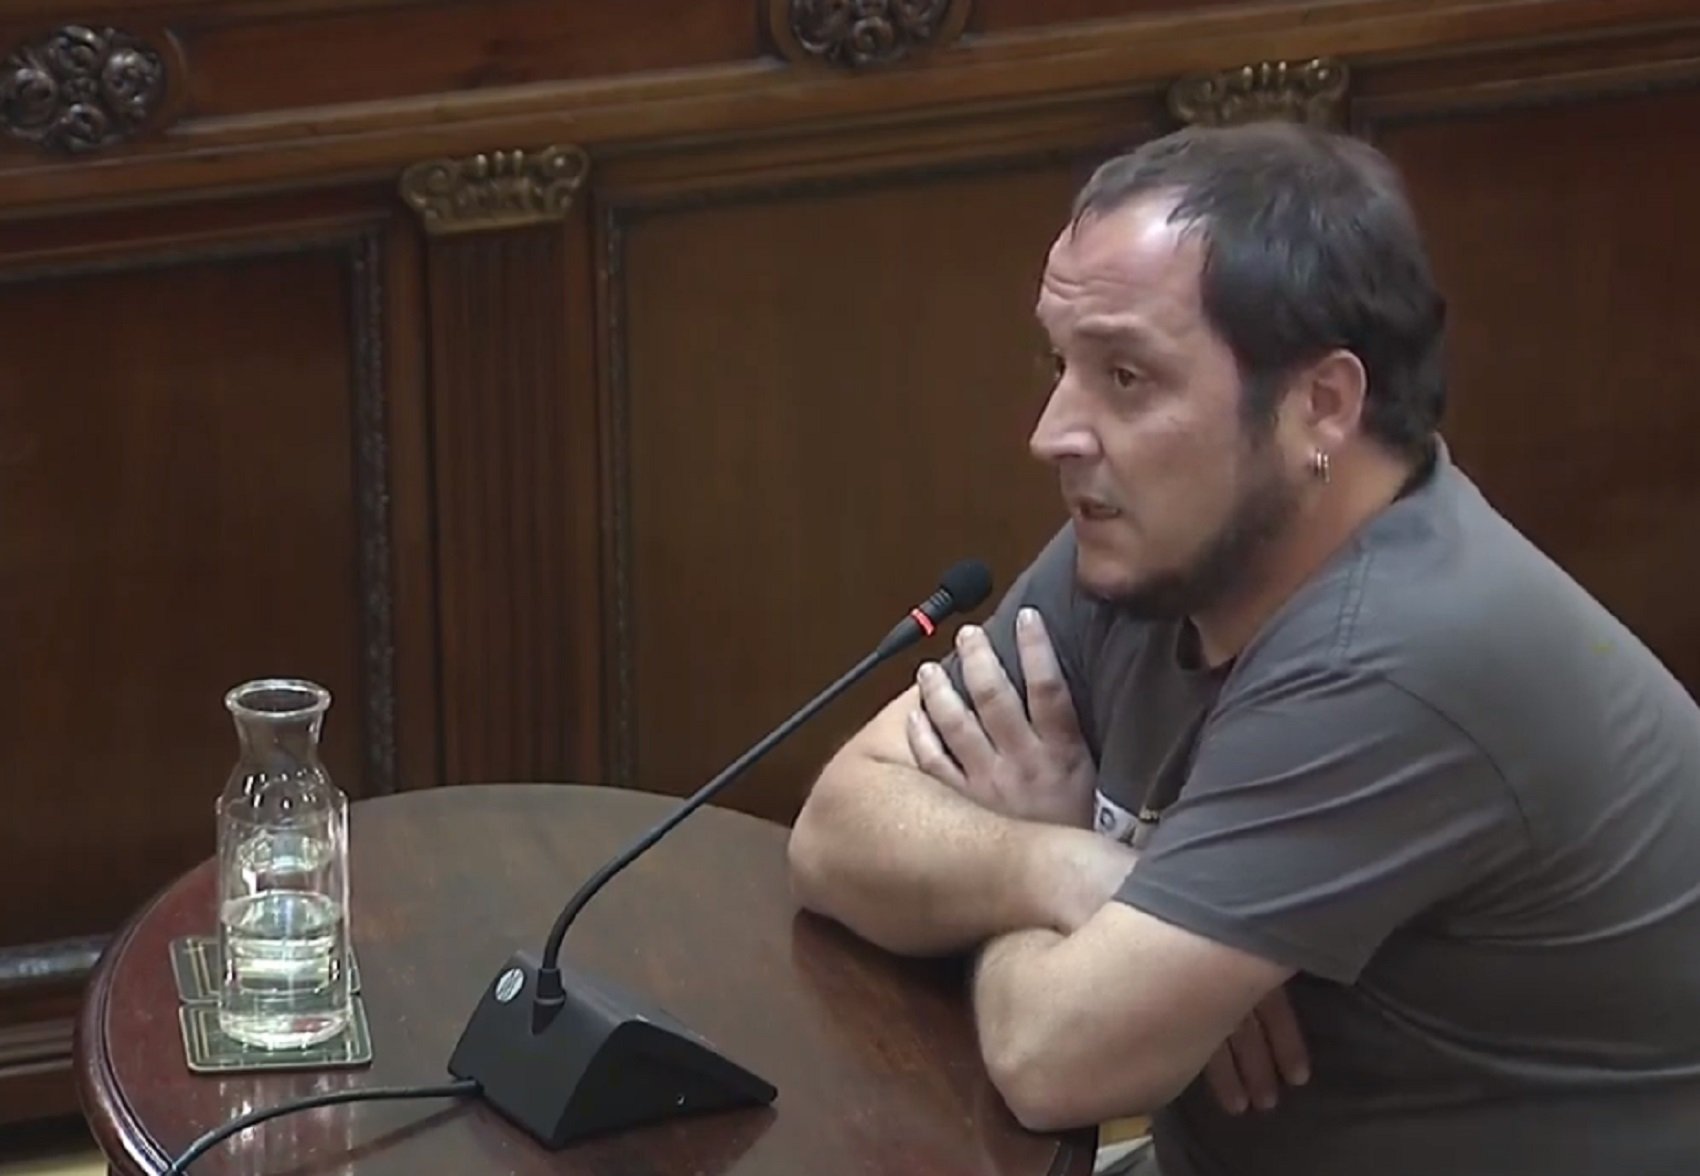 David Fernàndez: "Desobedecí a conciencia. Me declaro abiertamente culpable y reincidente"